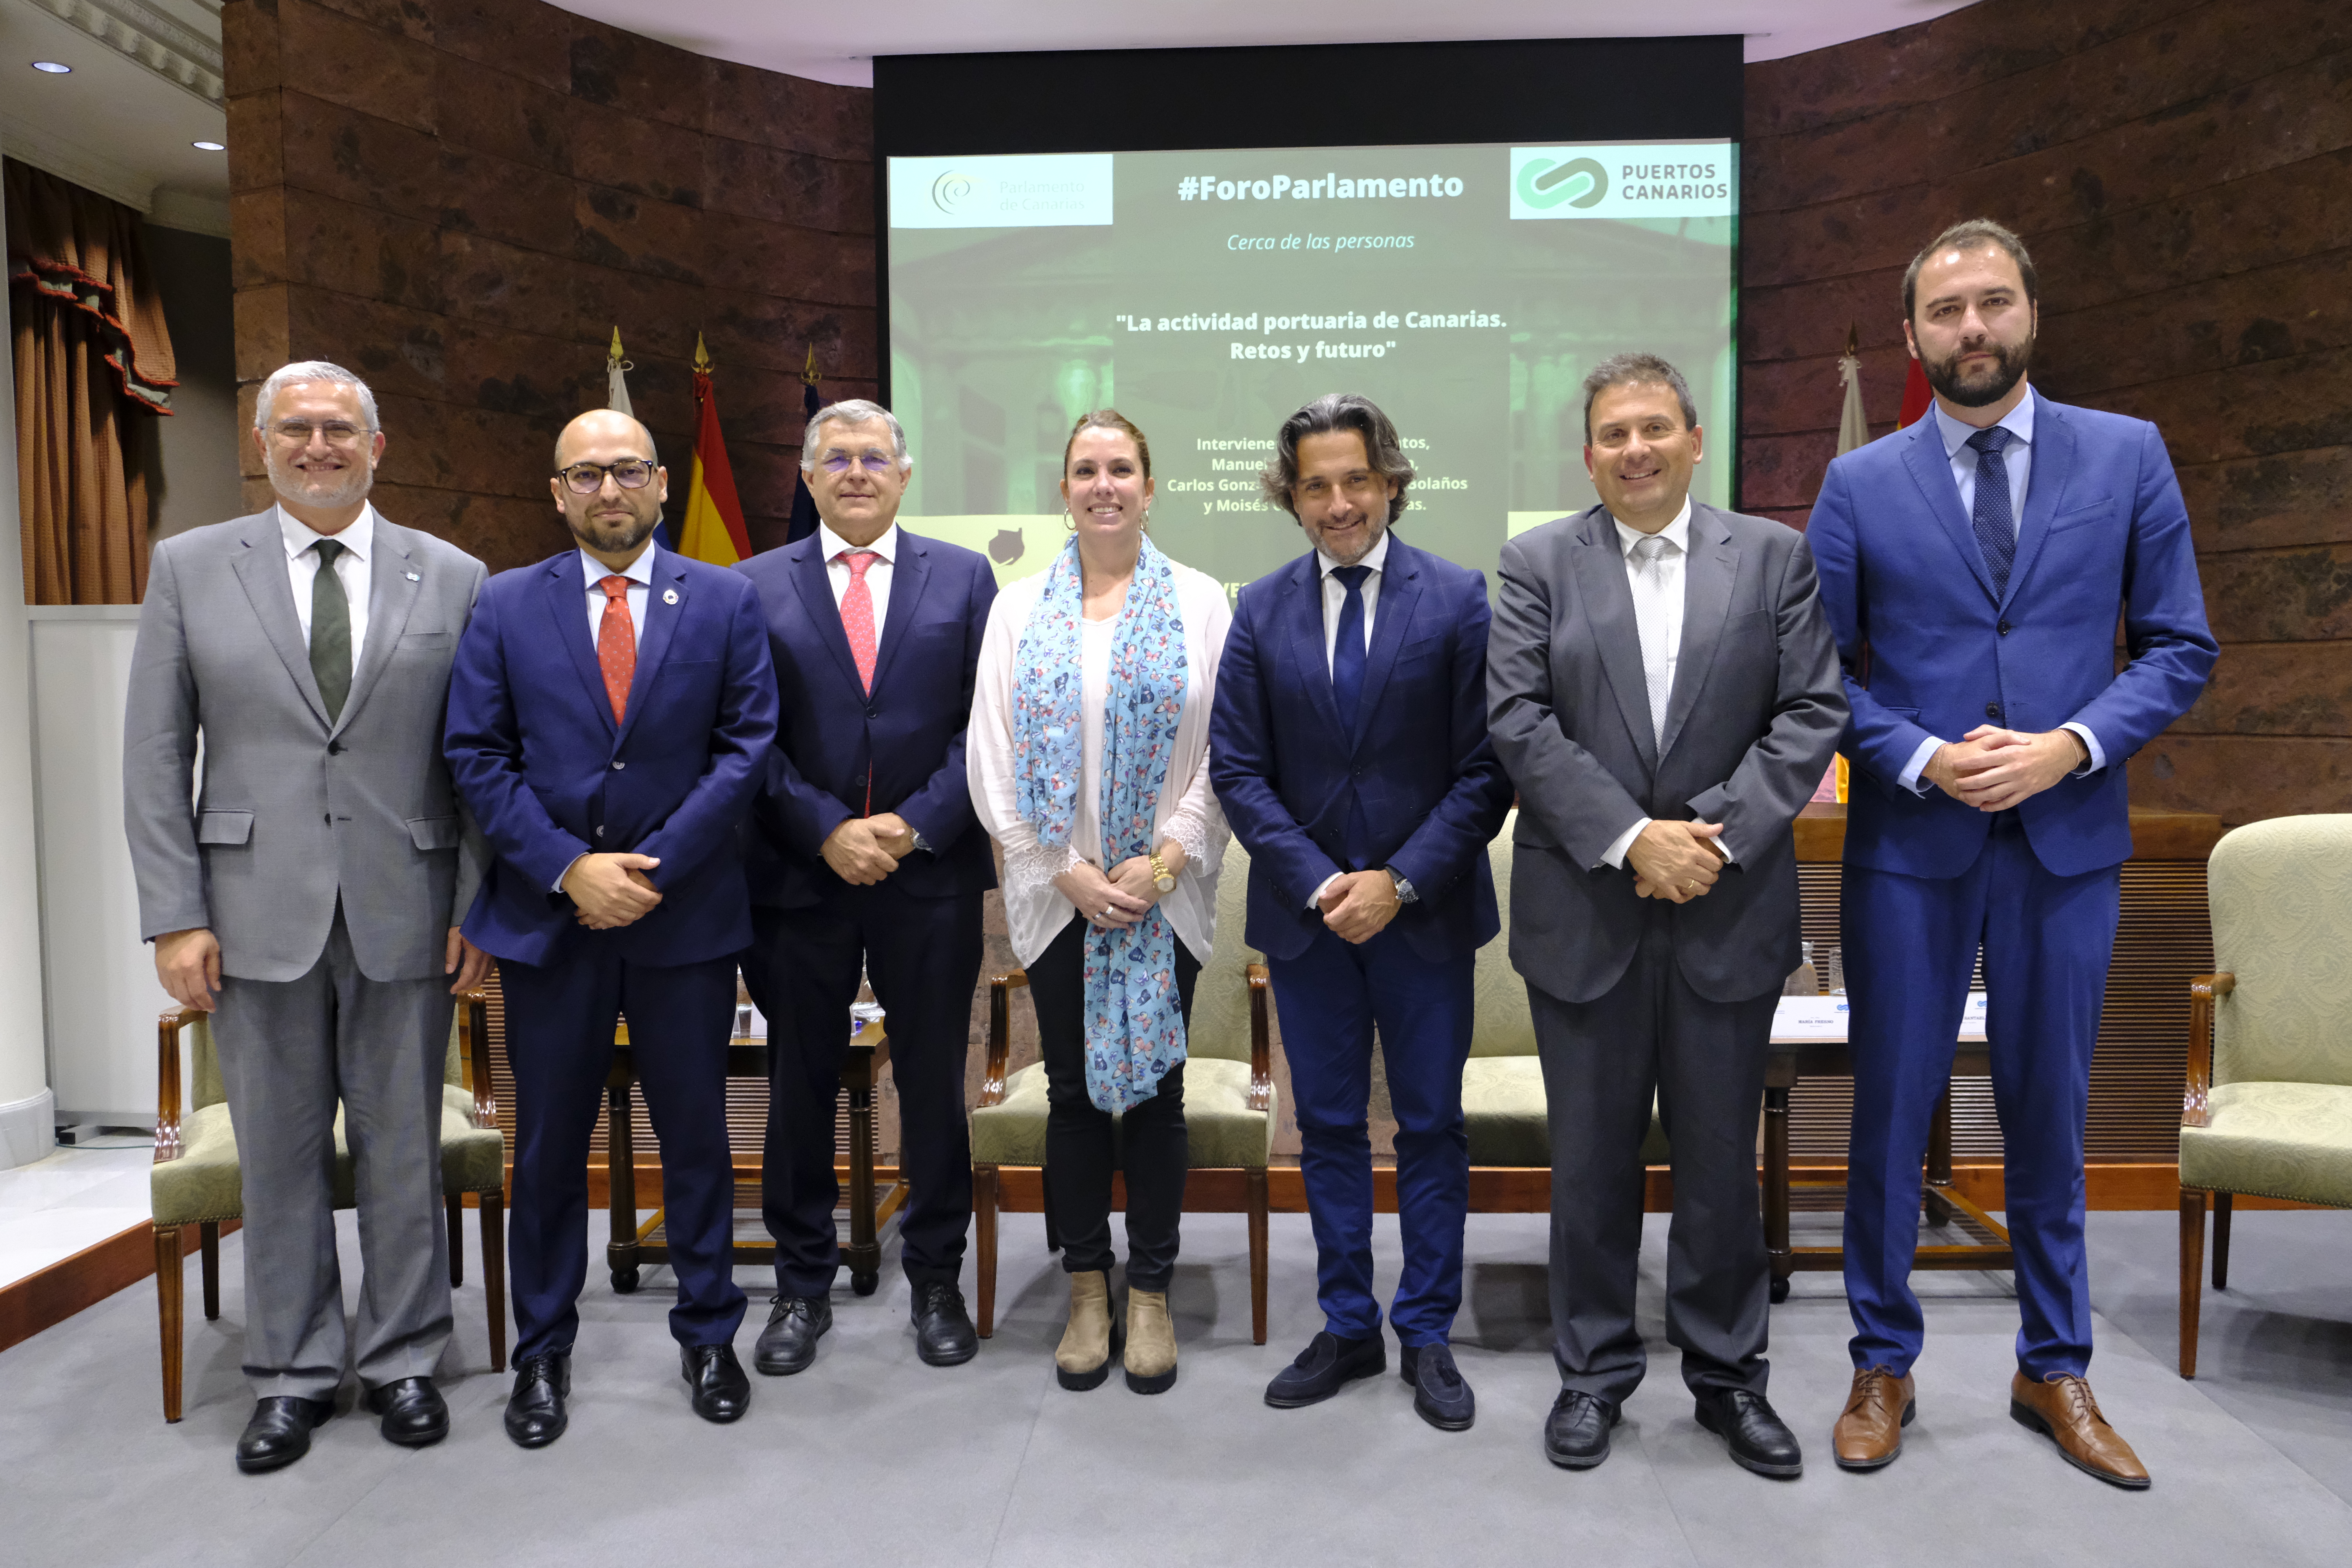 El presidente del Parlamento de Canarias junto a los ponentes del quinto Foro Parlamento y su moderadora, María Fresno